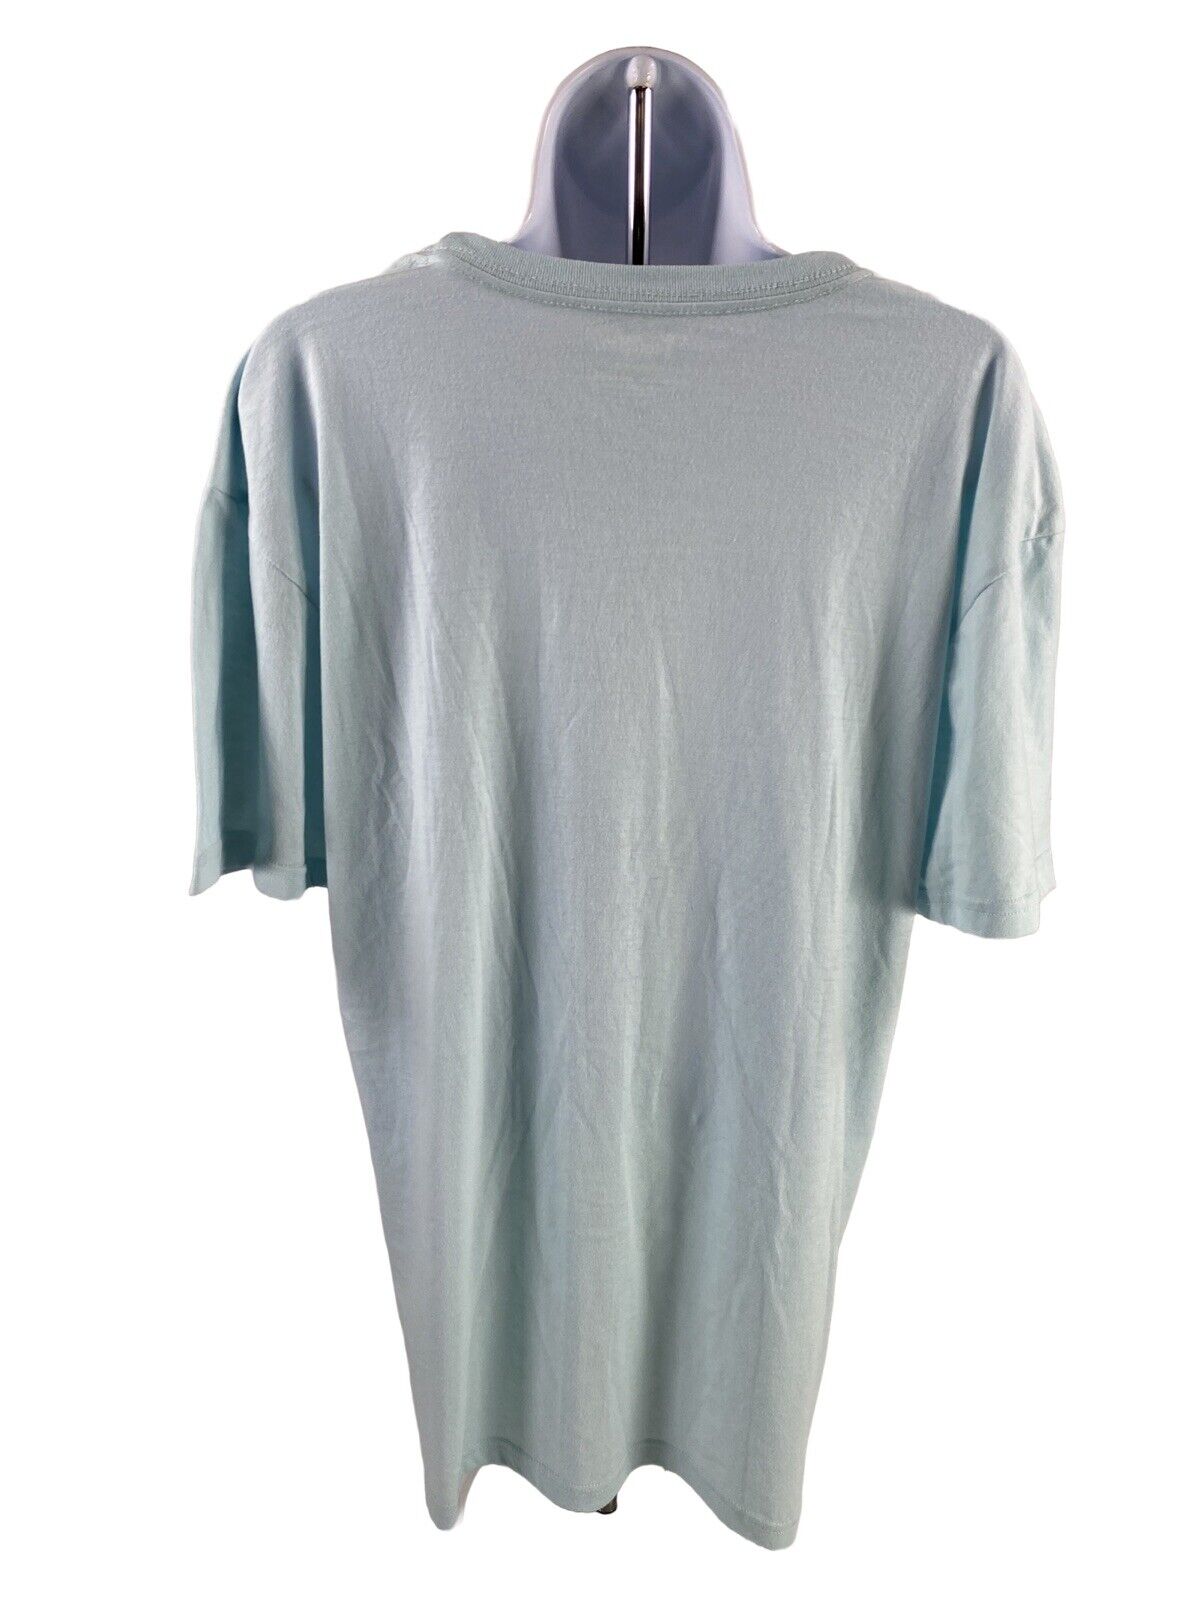 NEW Cotopaxi Women's Blue Ice Short Sleeve Do Good T-Shirt - XL